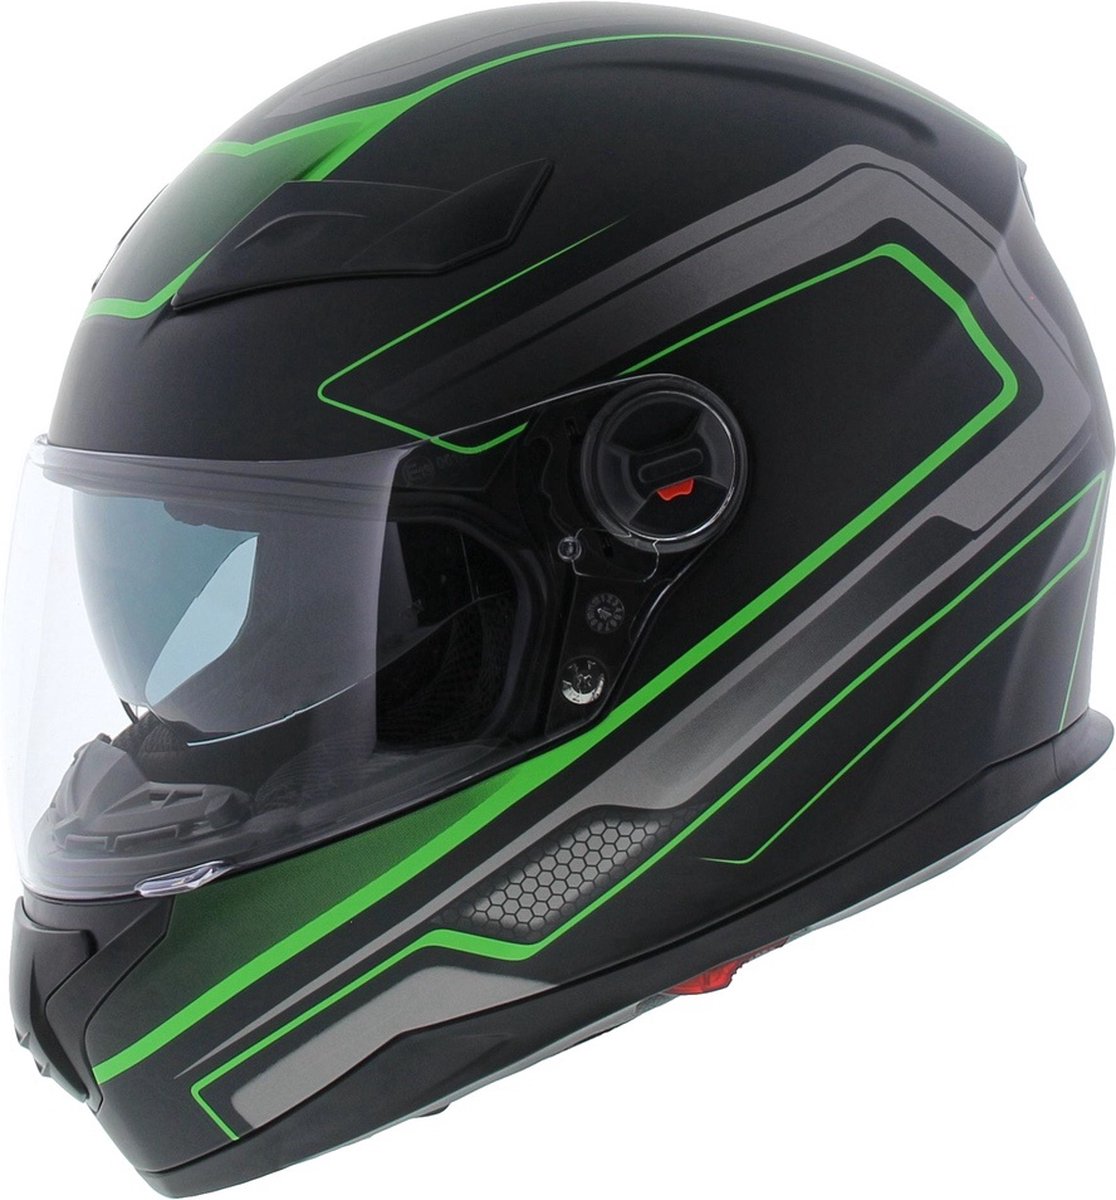 Motor / Scooter Helm - Vito Falcone - Integraalhelm - Mat zwart / groen - XL